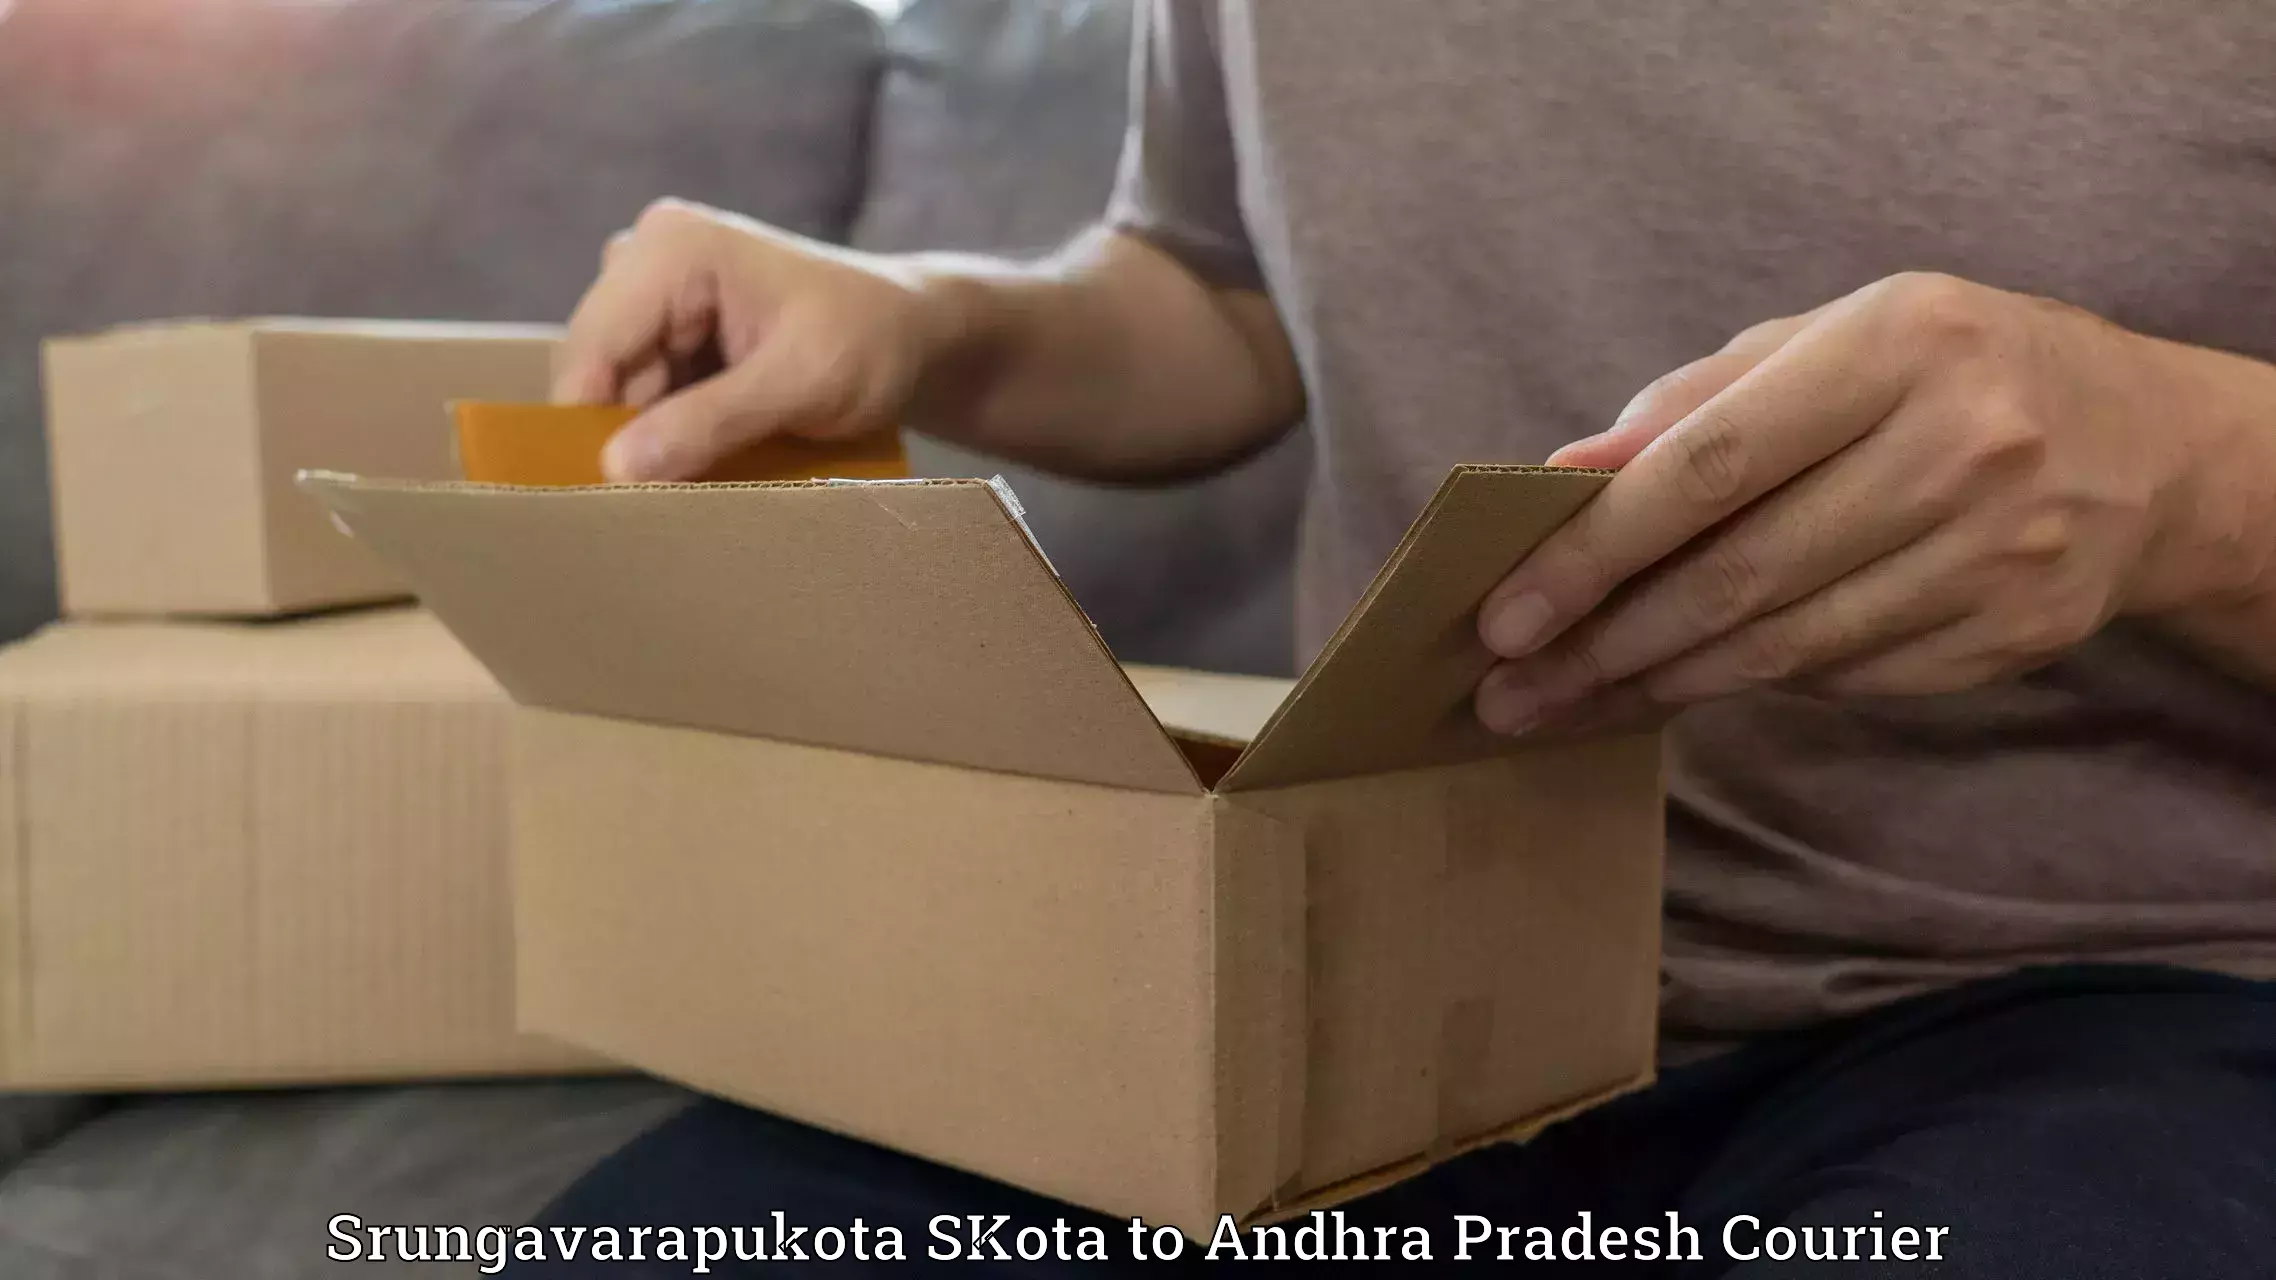 Courier service comparison Srungavarapukota SKota to Tada Tirupati